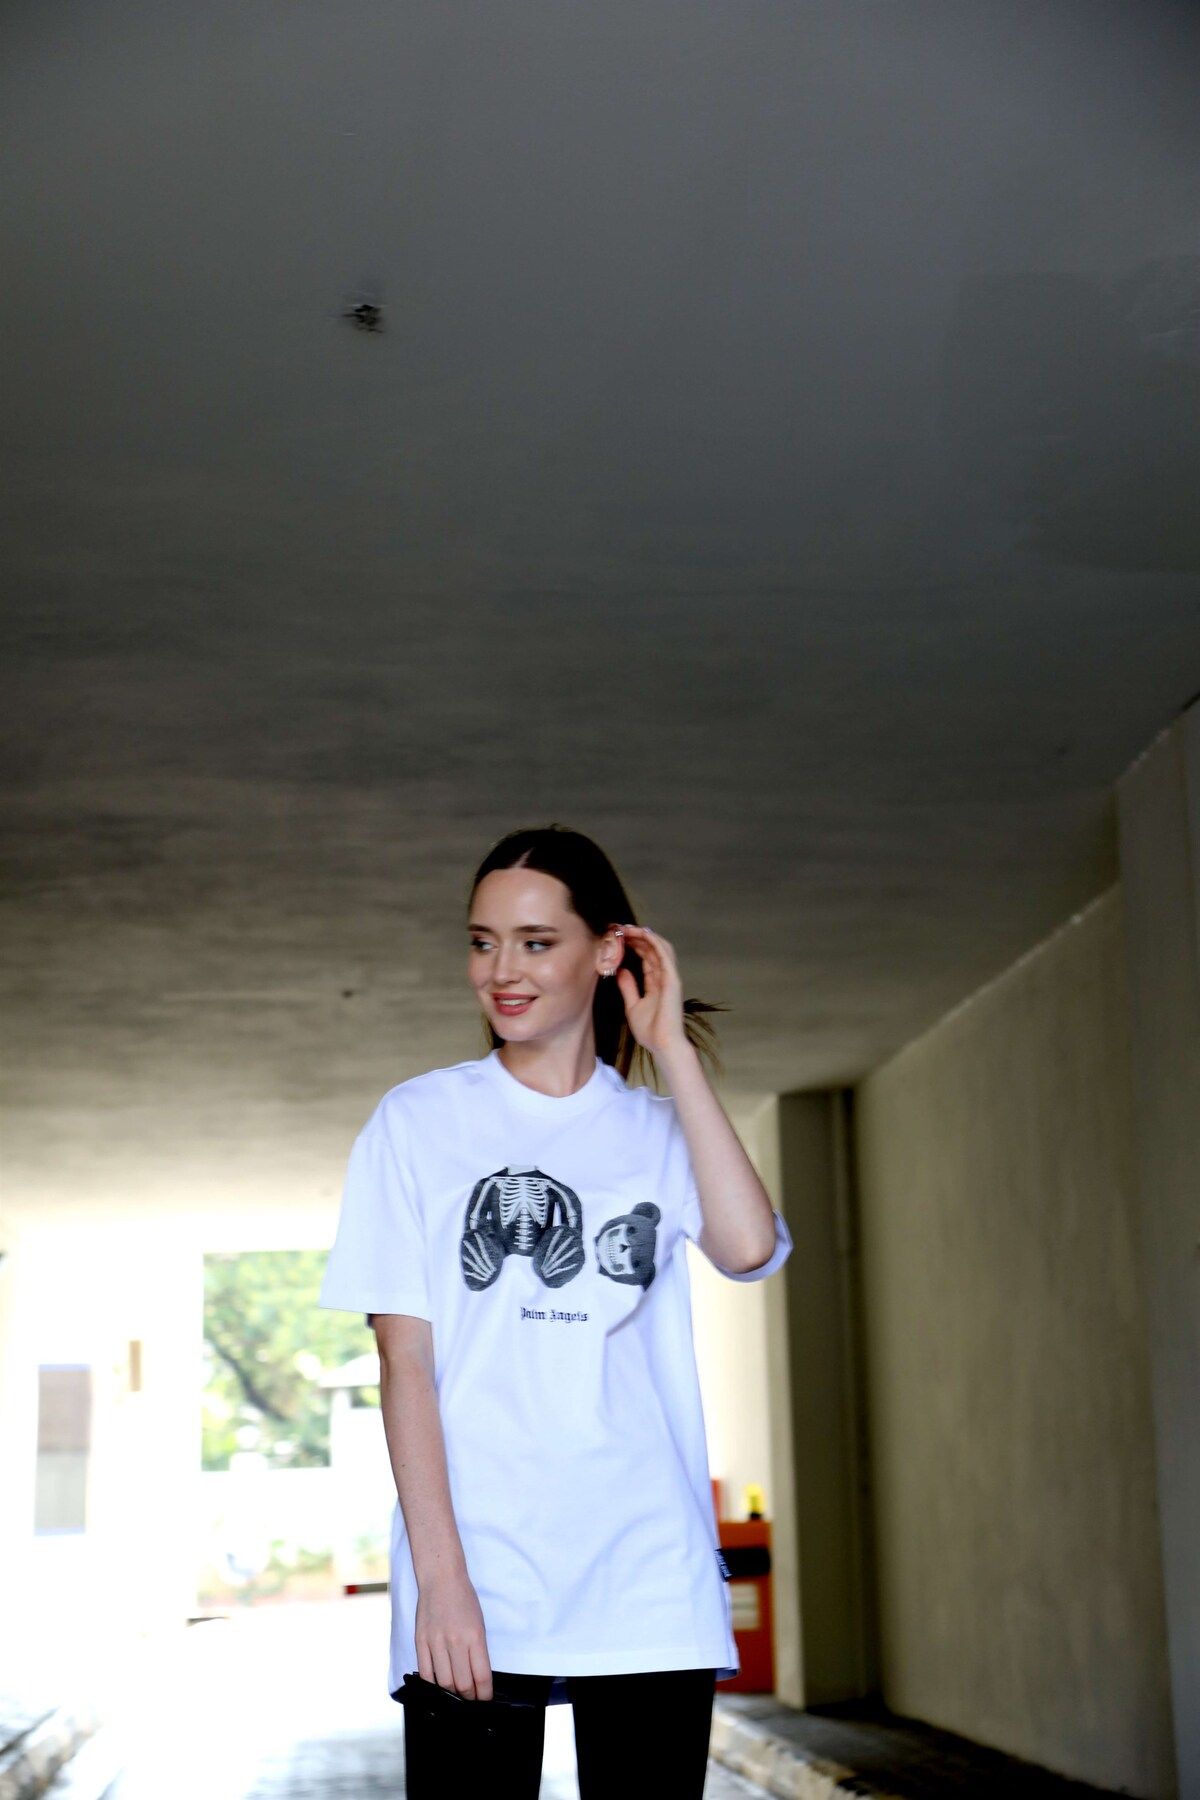 VorNişantaşı Kadın Özel Tasarım Iskelet Ayıcık Baskılı Tshirt